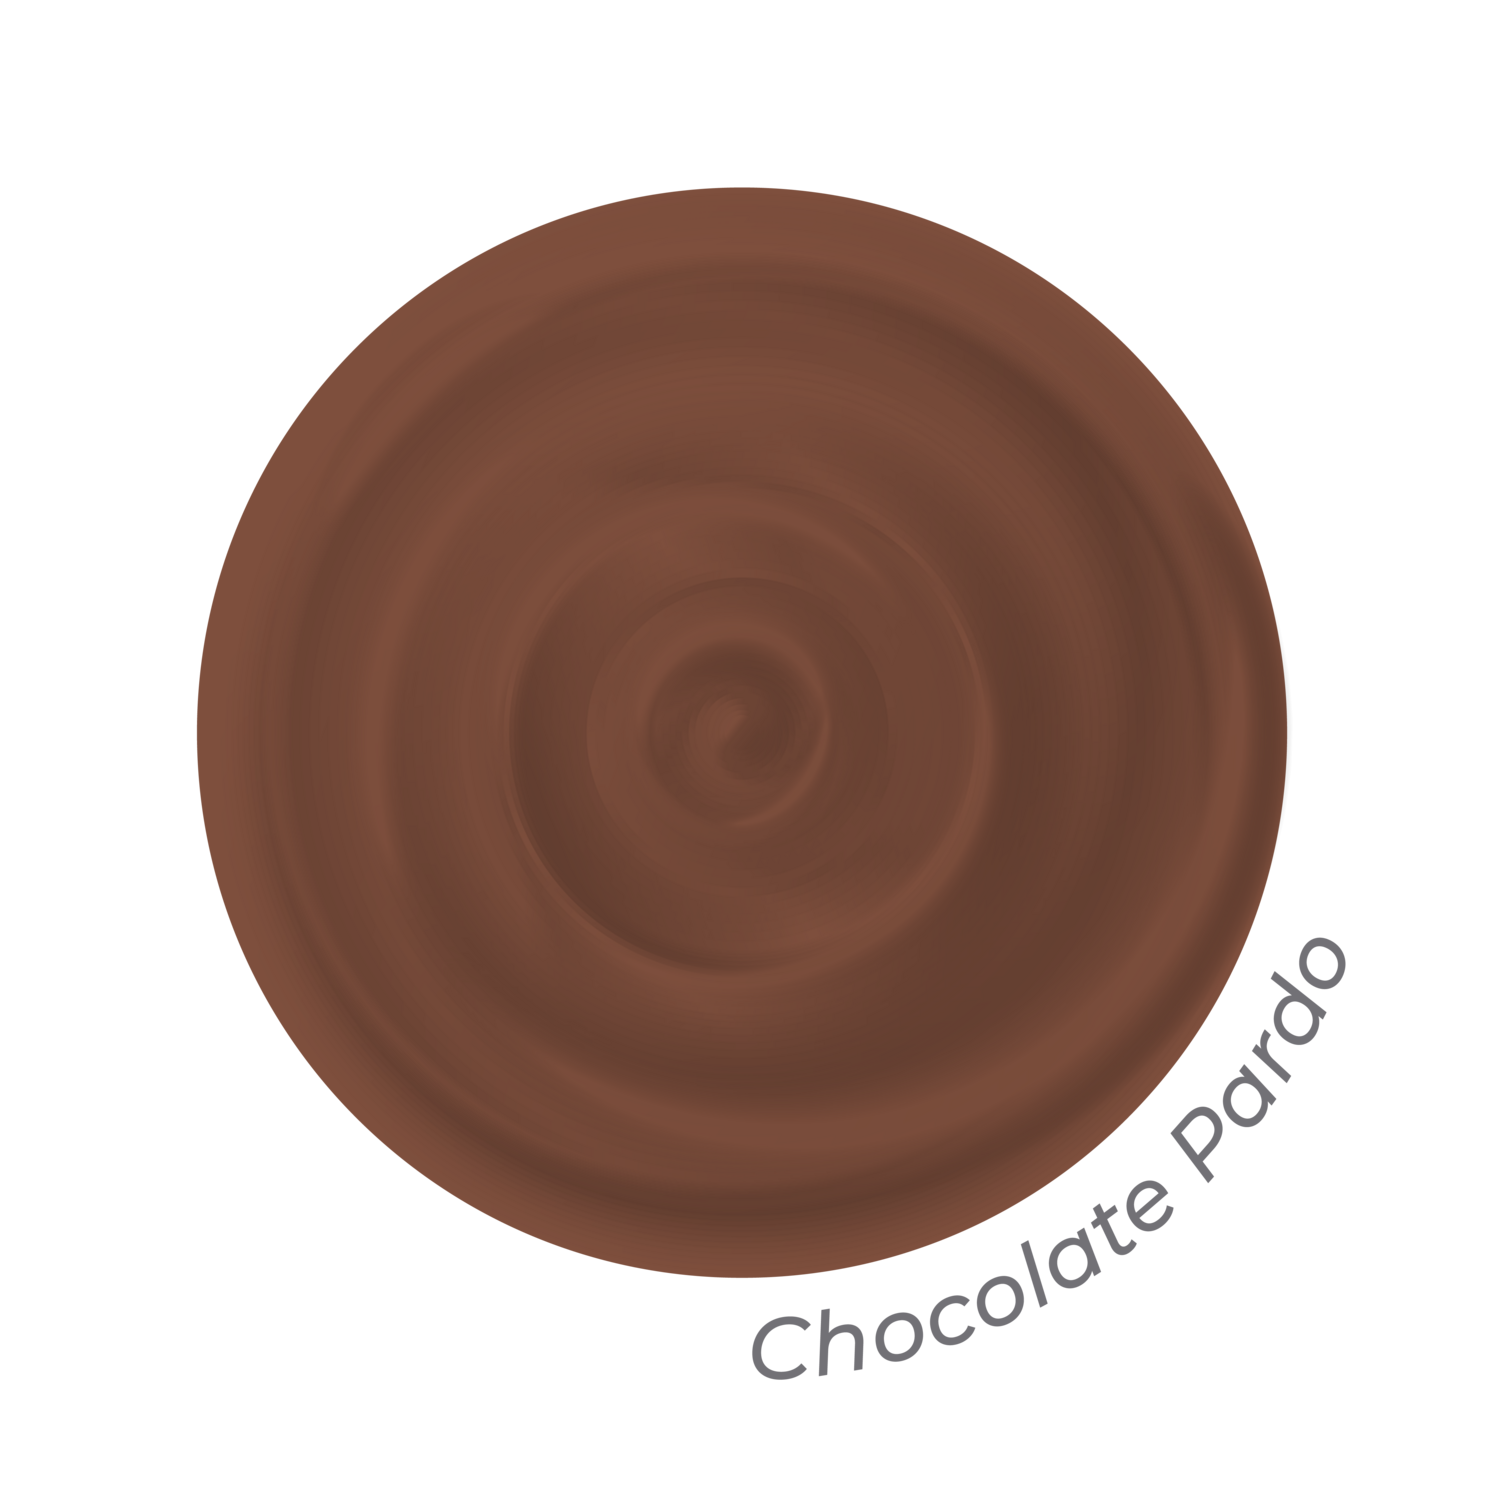 Color Liquido Chocolate Pardo